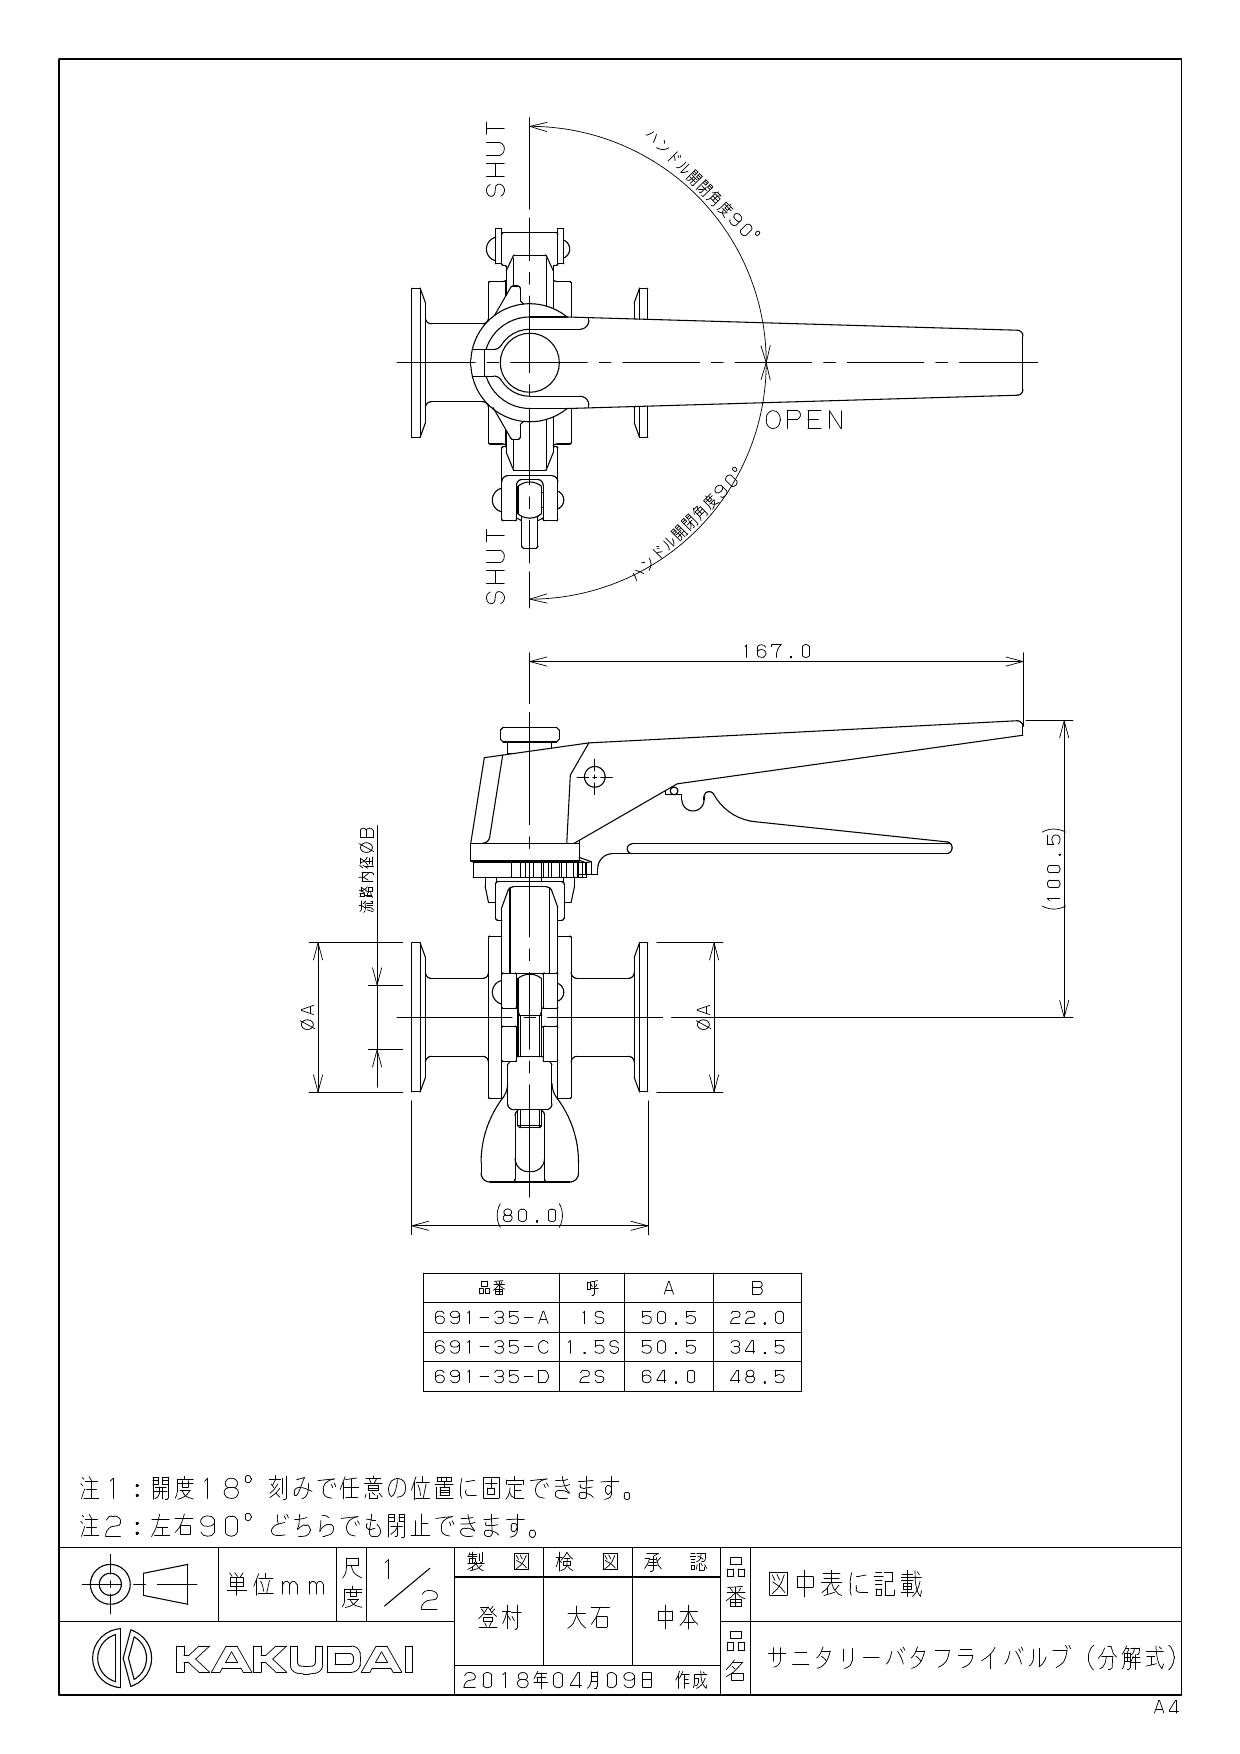 カクダイ 691-35-C商品図面 | 通販 プロストア ダイレクト